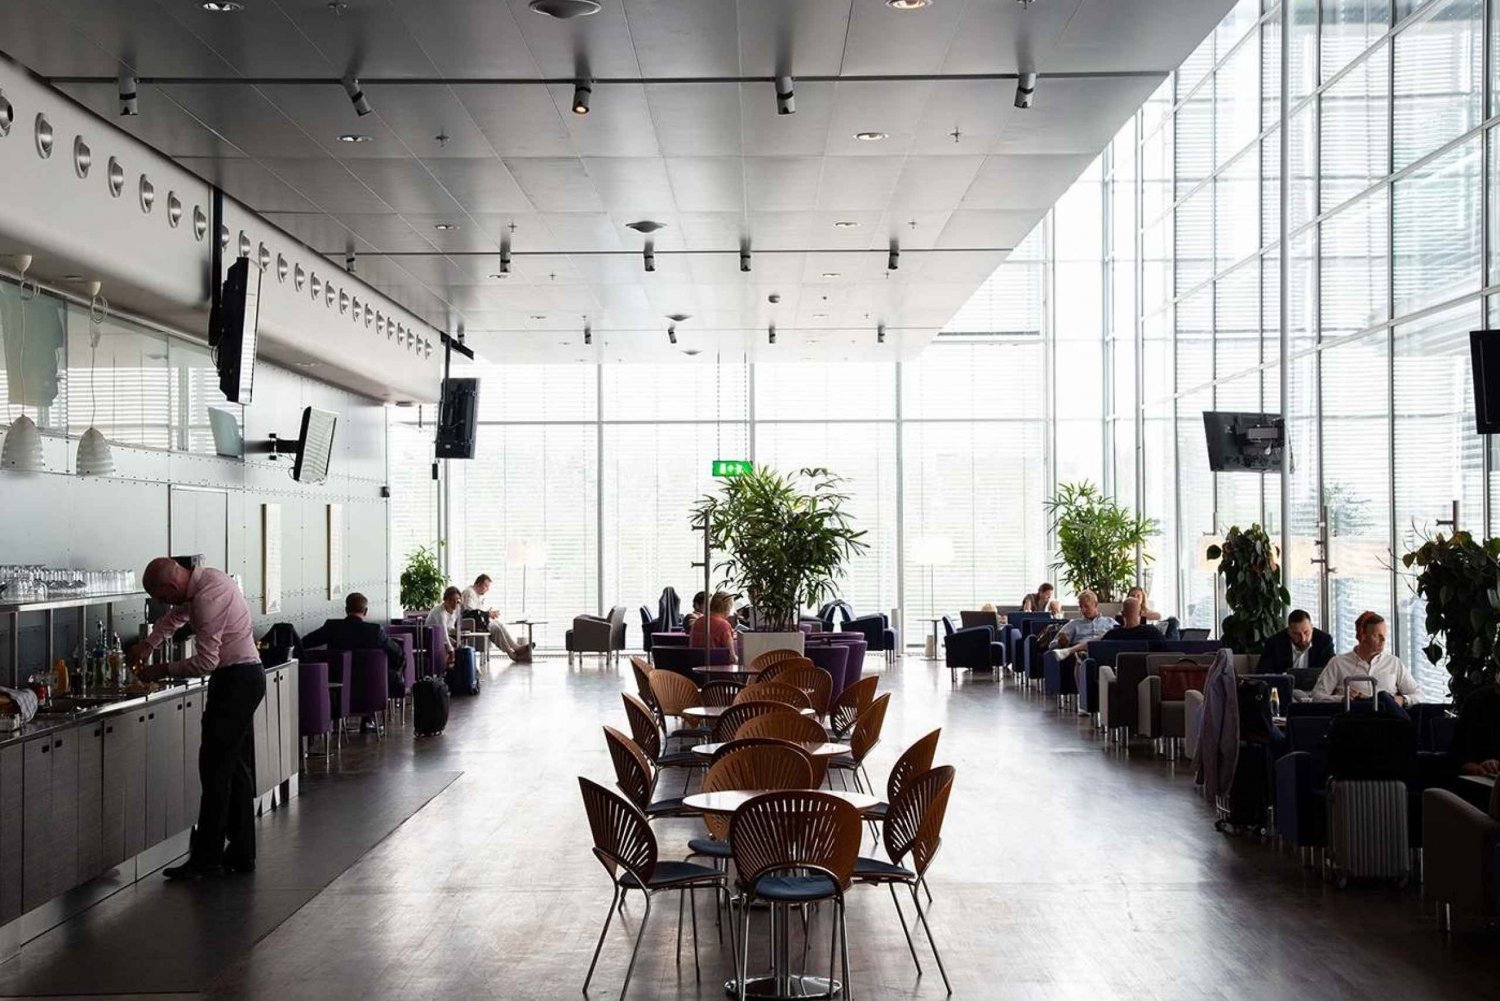 Aeropuerto de Estocolmo Arlanda (ARN): entrada a la sala Premium